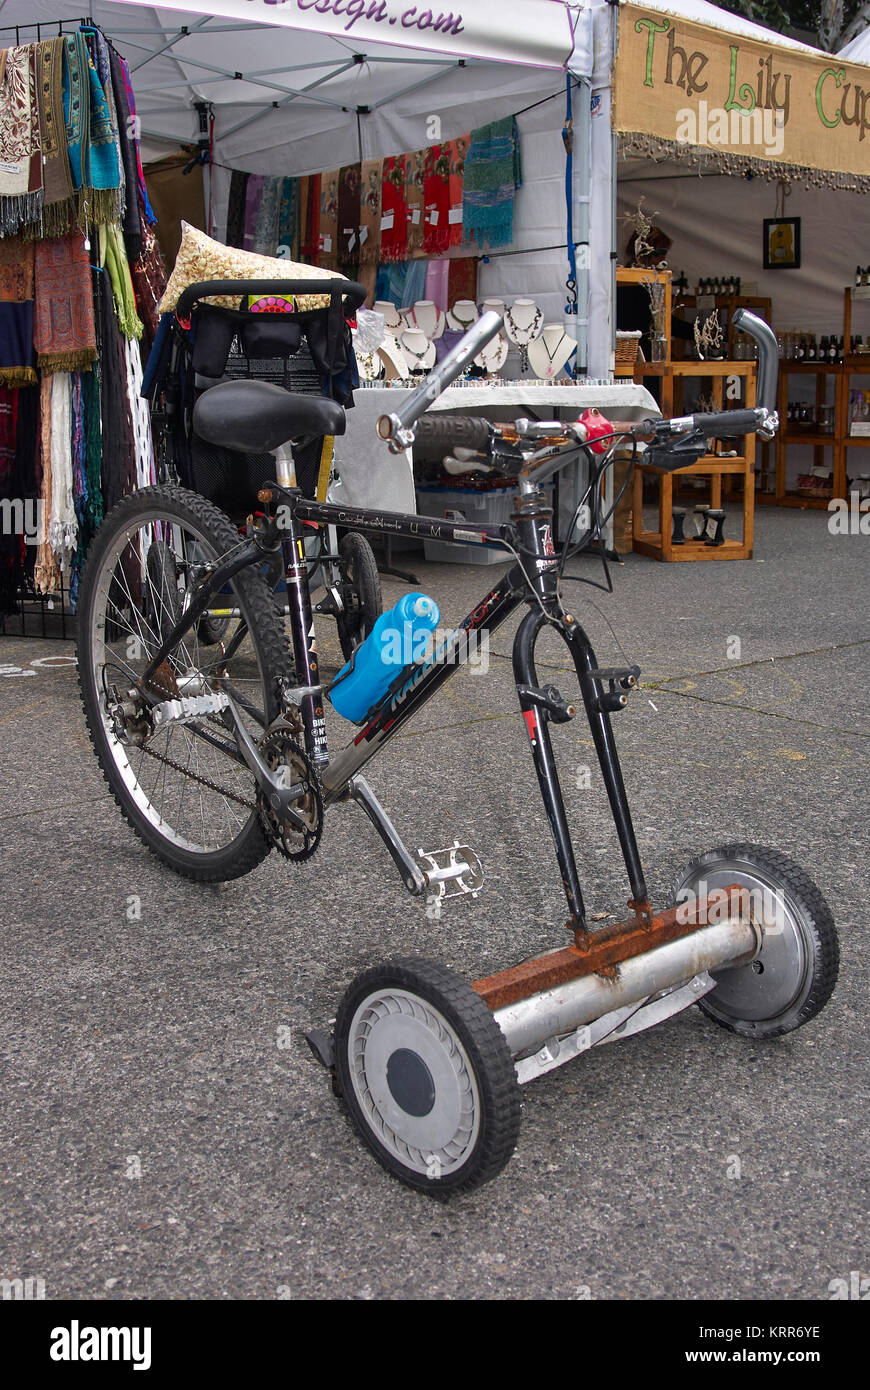 Un vélo transformé en être une tondeuse manuelle Photo Stock - Alamy